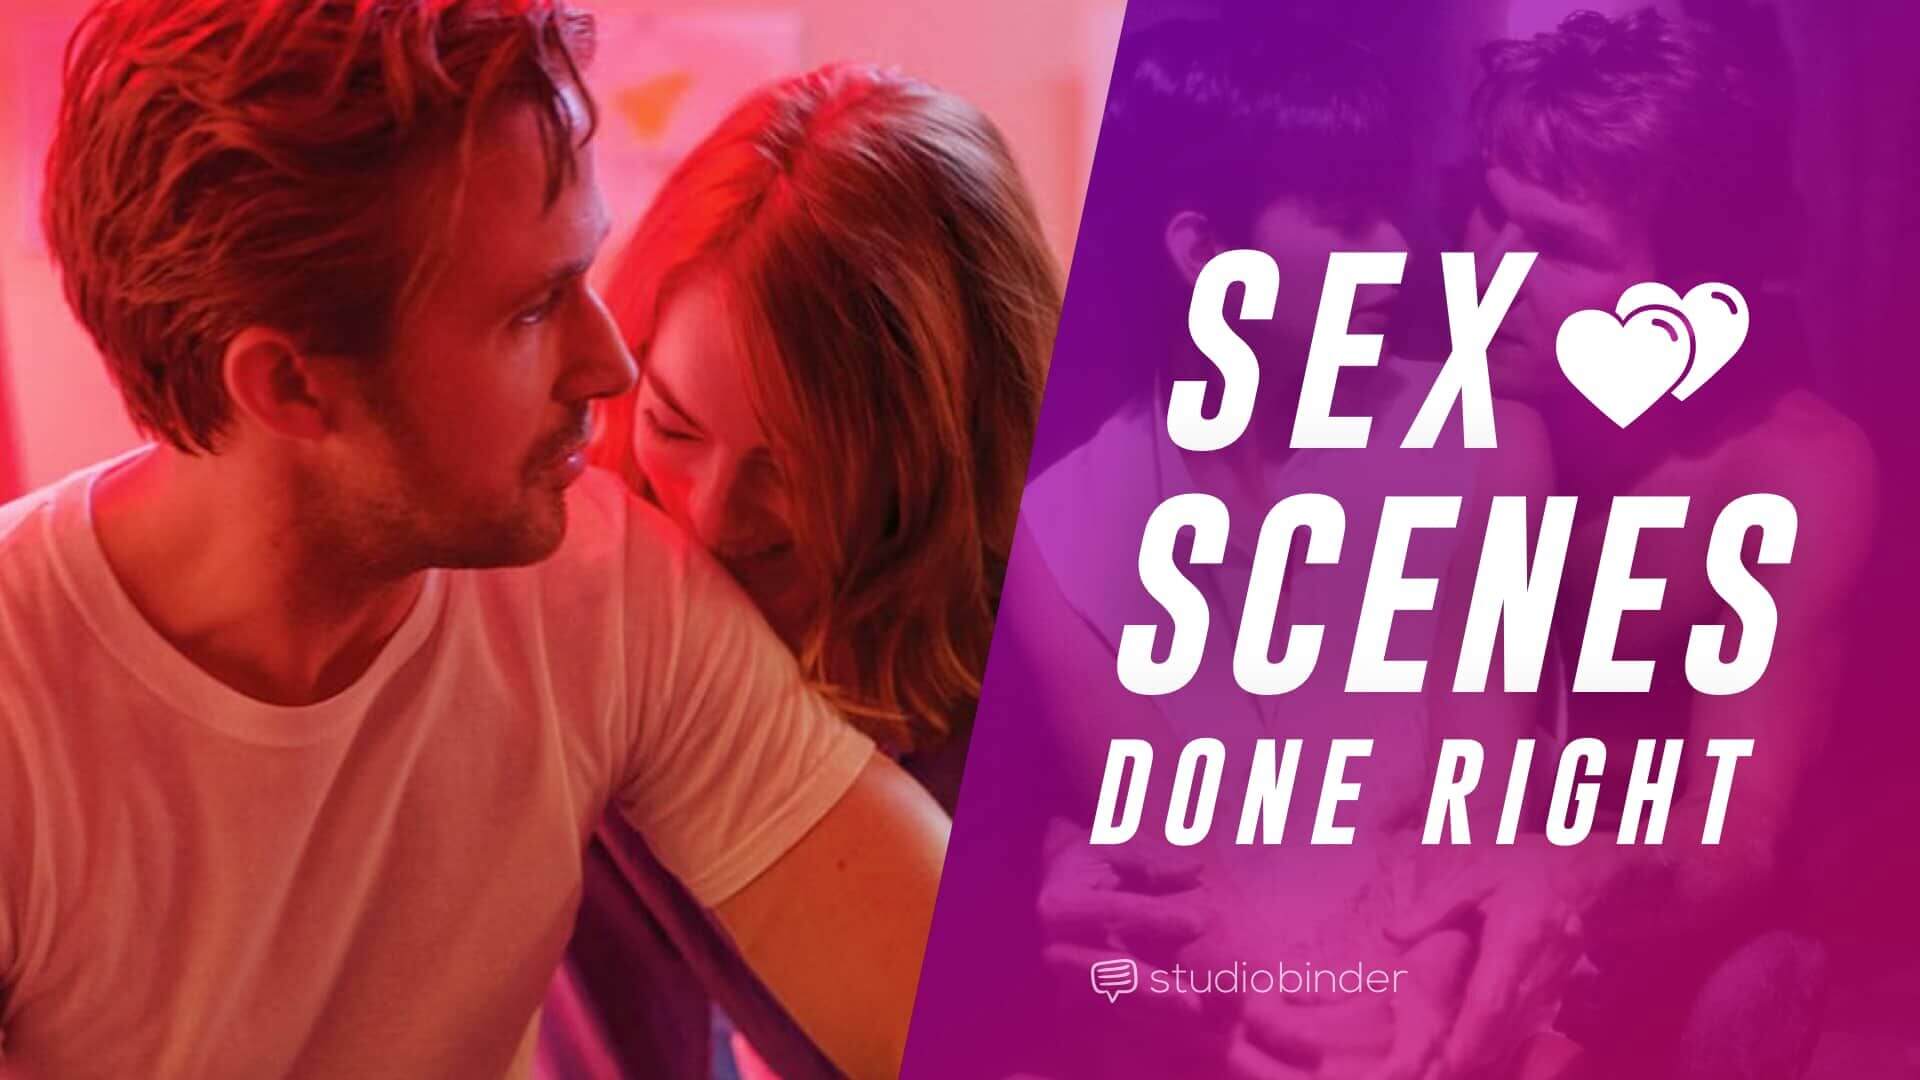 Youtube movie sex scenes